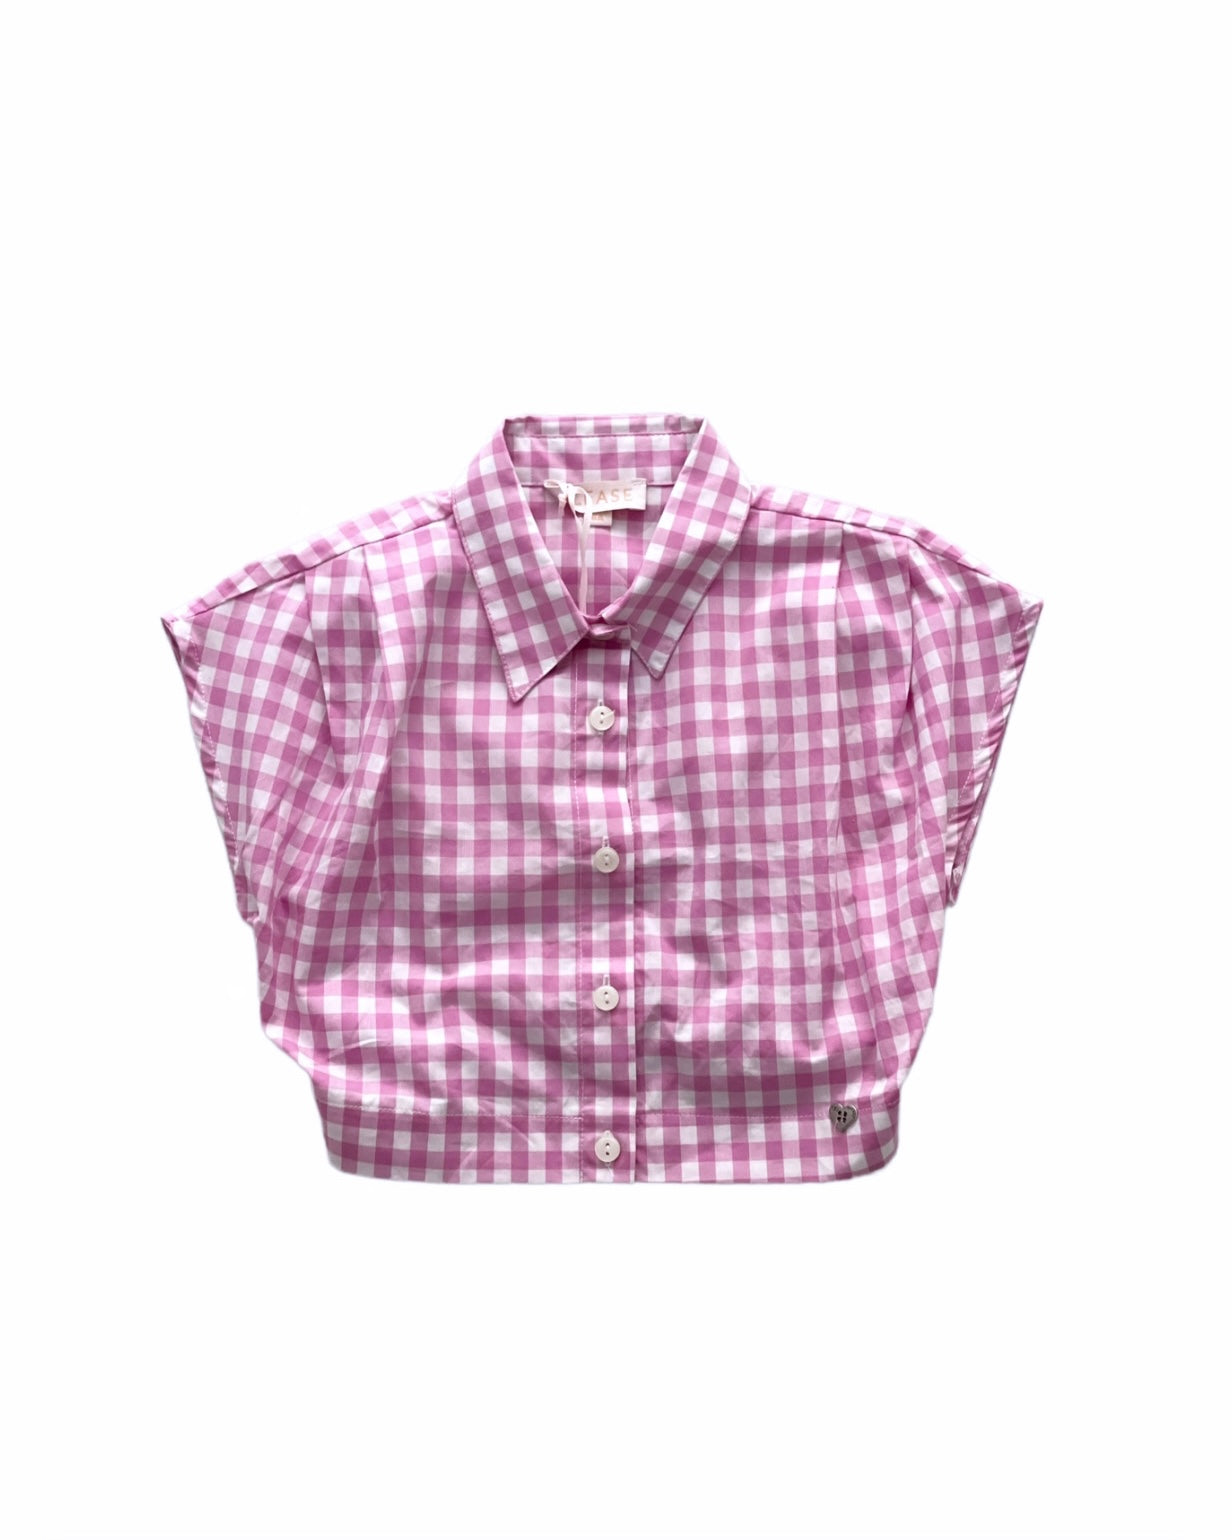 Camicia check rosa per bambina